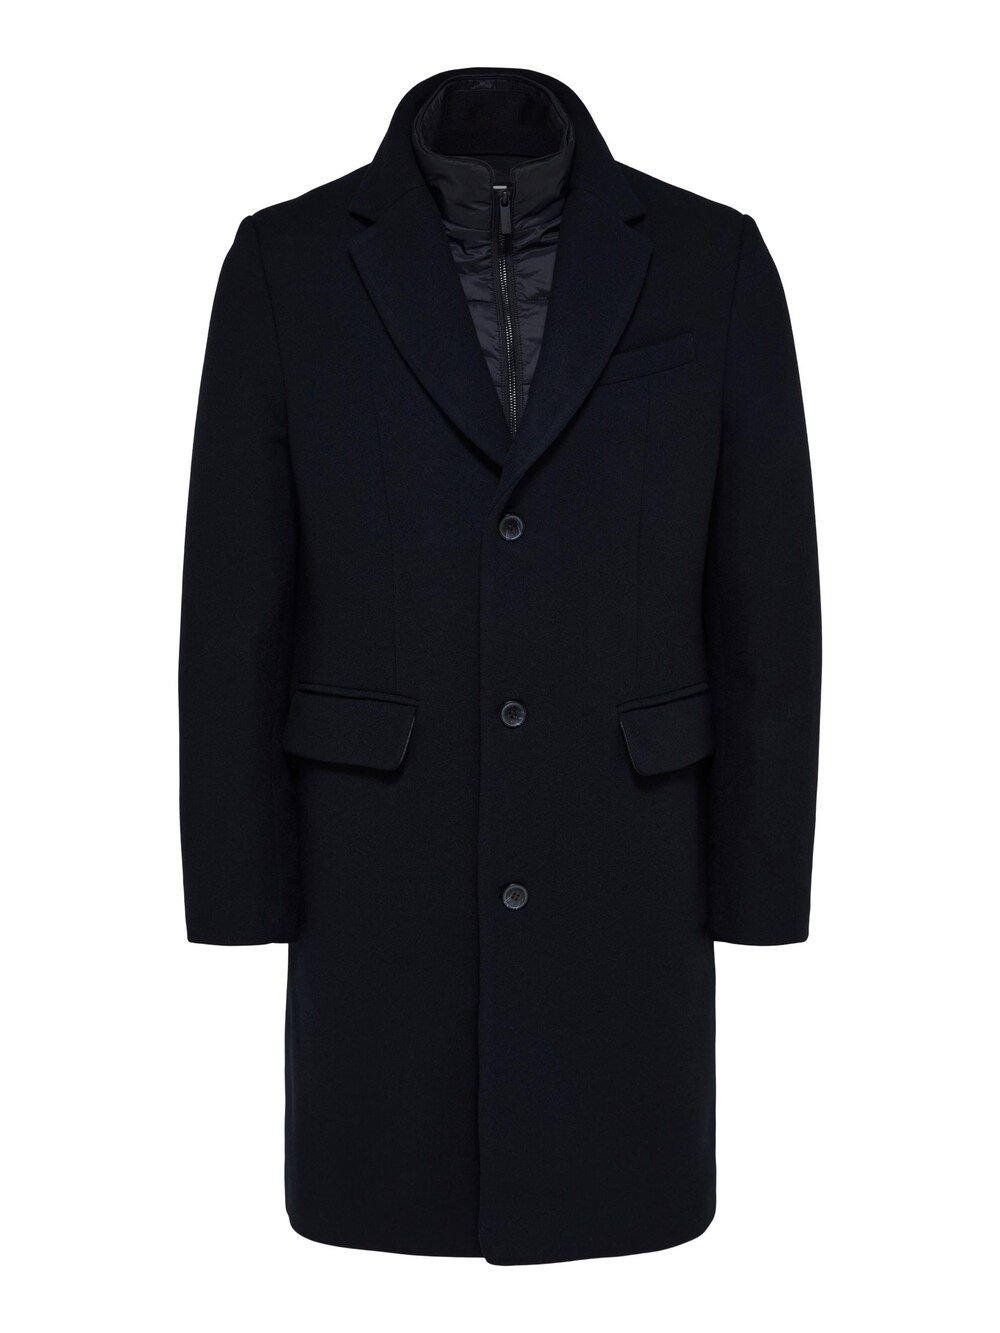 Межсезонное пальто SELECTED HOMME Joseph, черный межсезонное пальто selected new element черный